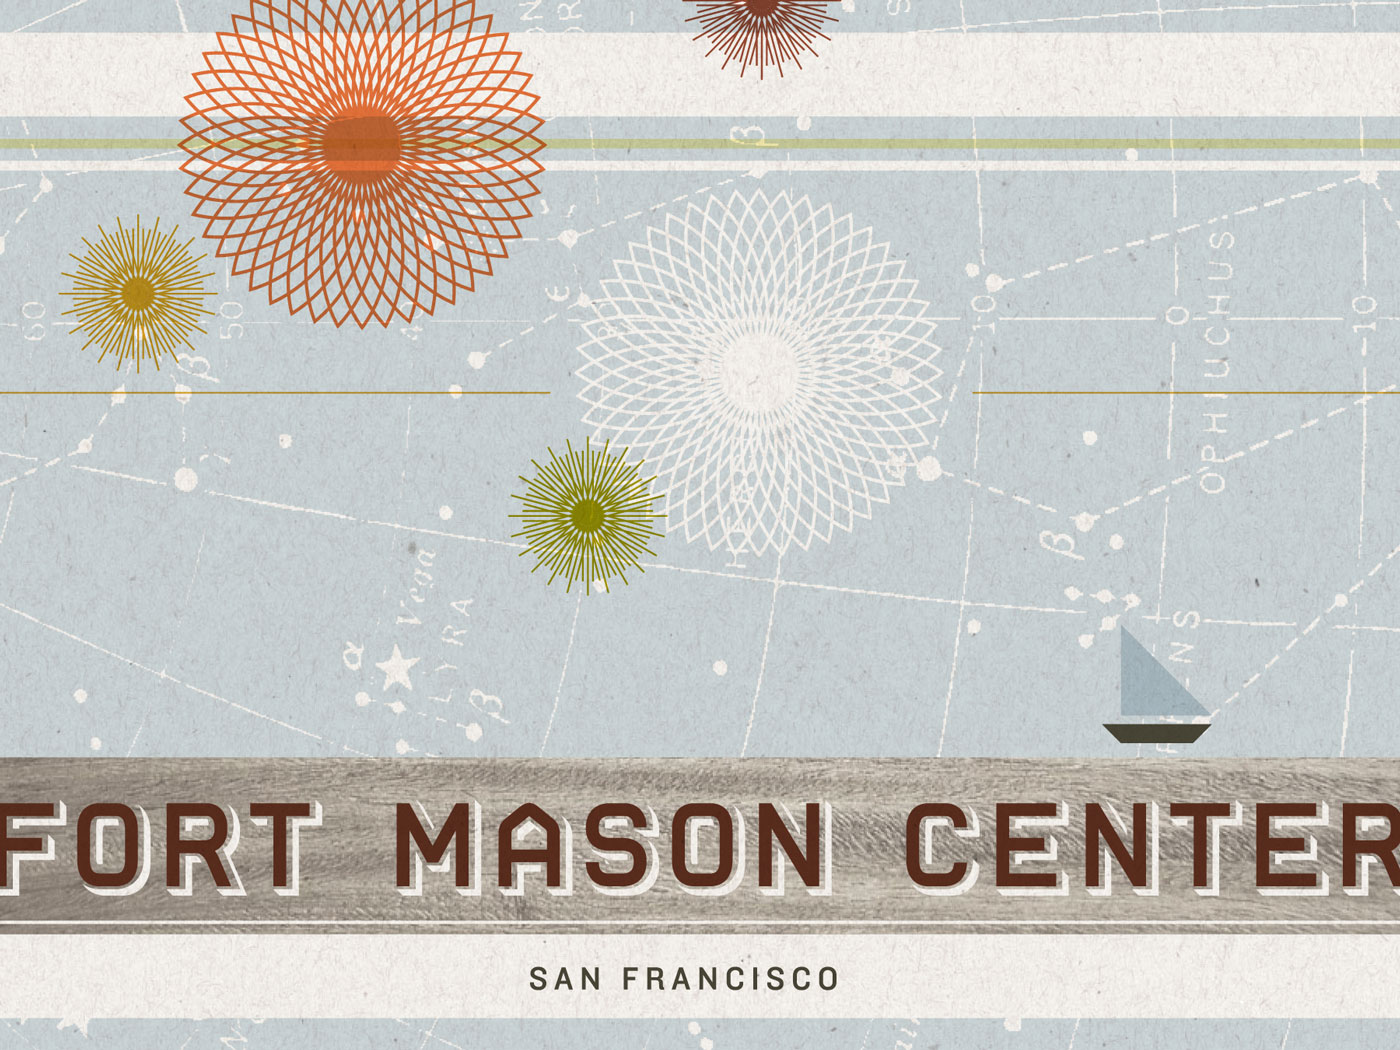 Fort Mason Center San Francisco brand board